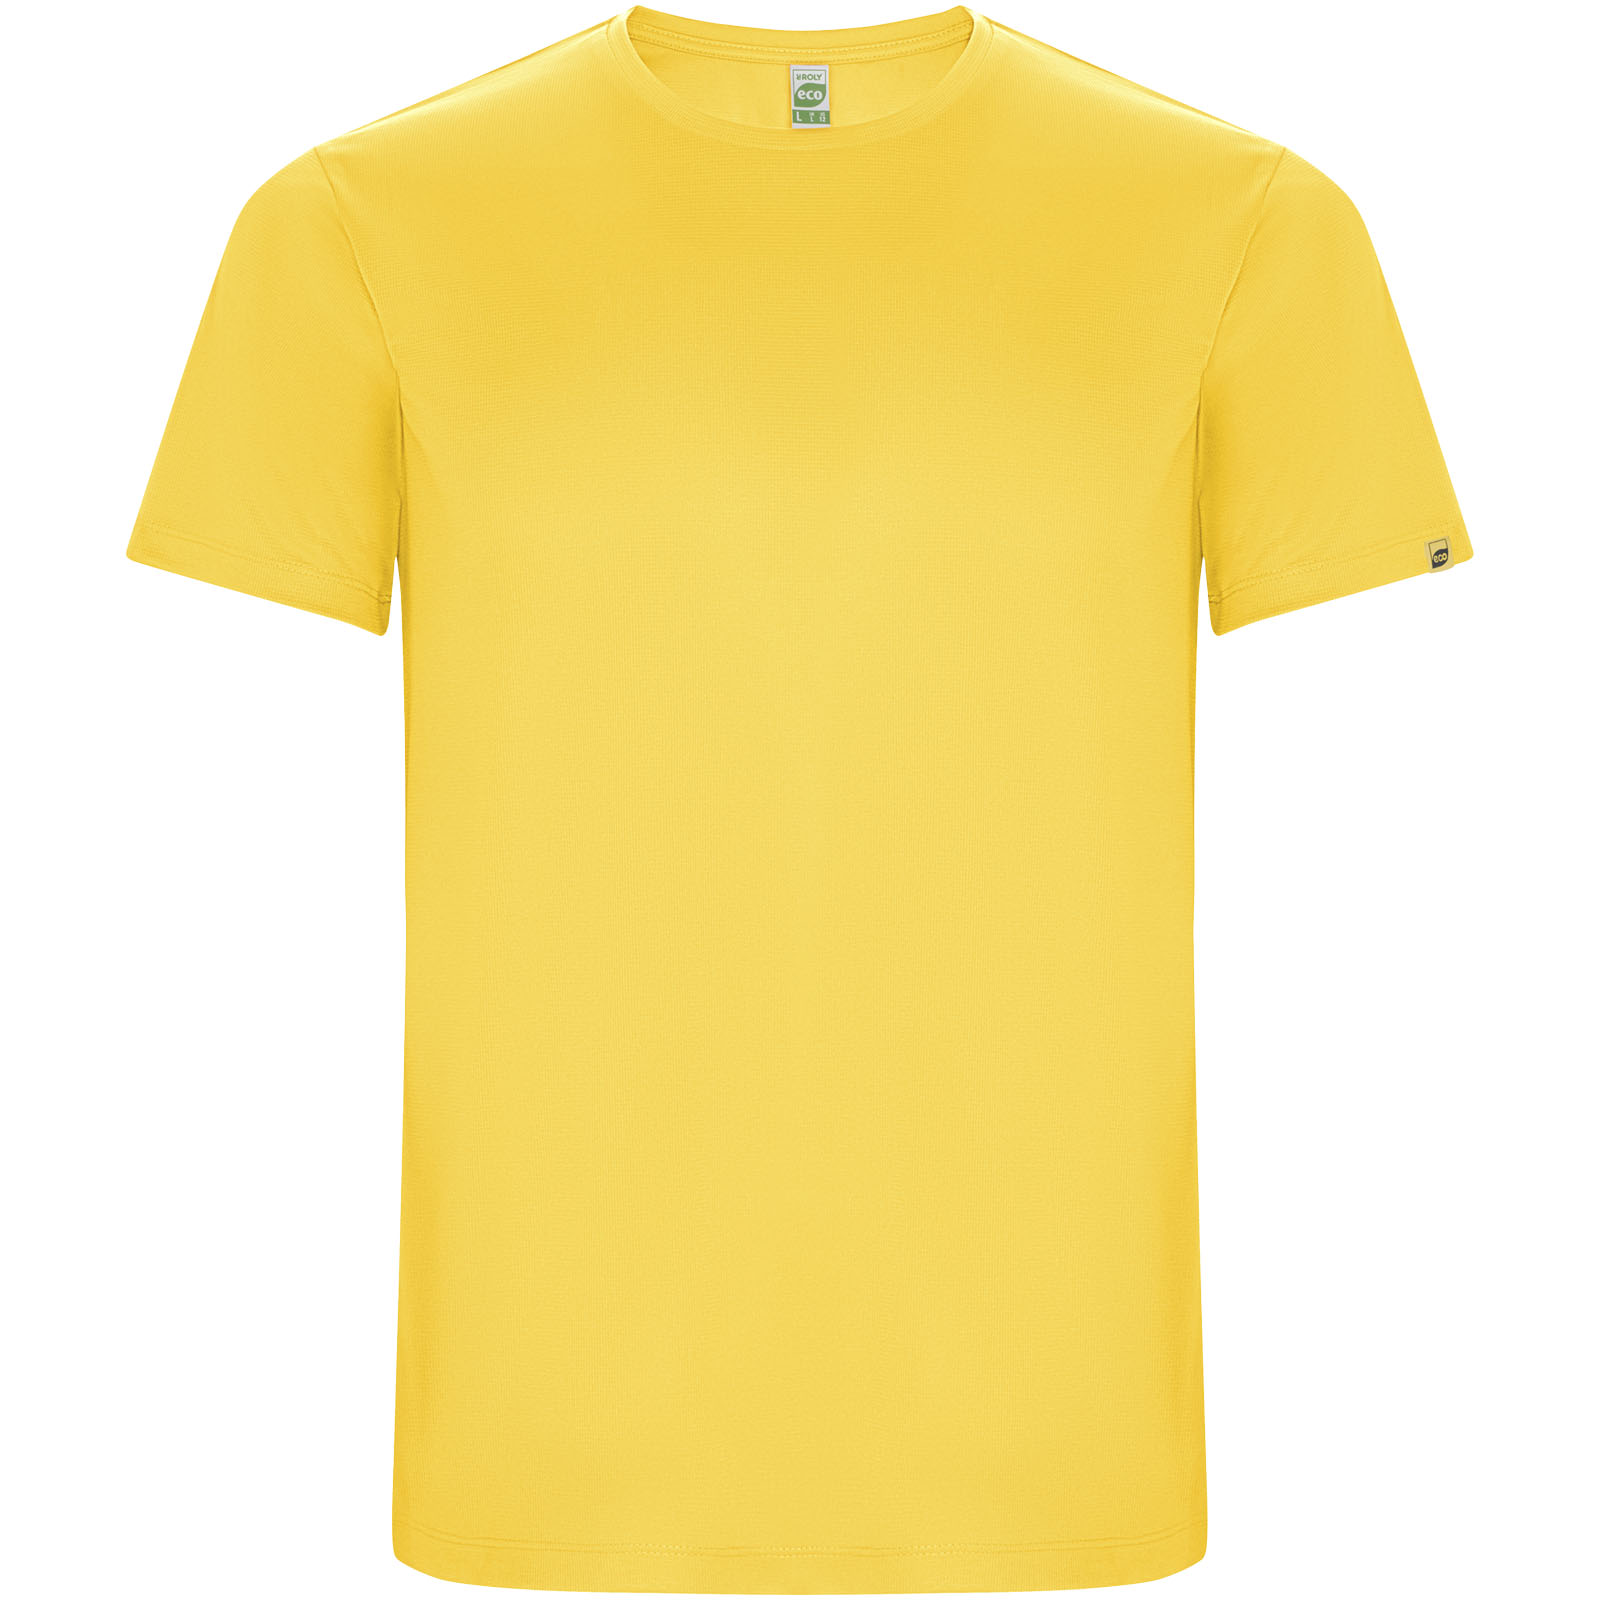 Vêtements - T-shirt sport Imola à manches courtes pour enfant